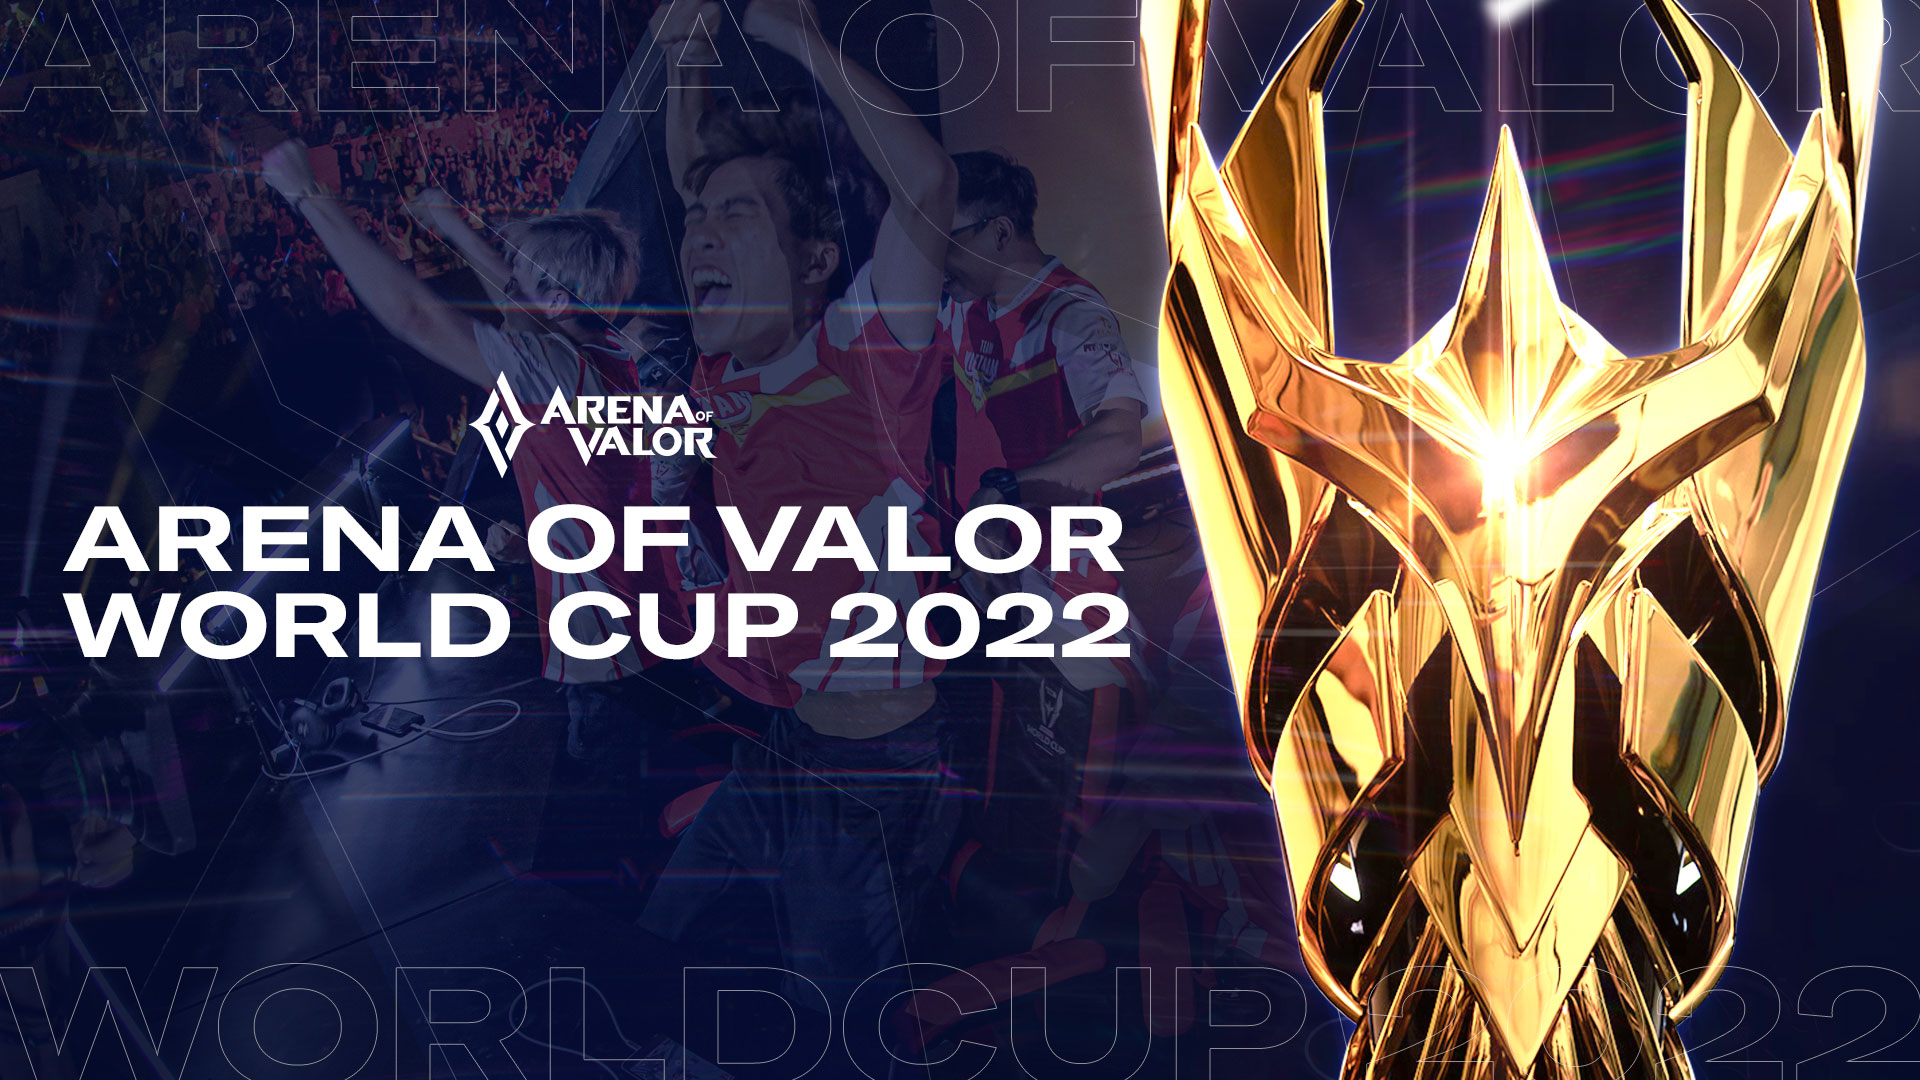 Liên Quân Mobile và Honor of Kings ra mắt chế độ thi đấu Esports mới tại AWC 2022 với tổng giải thưởng hơn 8 triệu USD